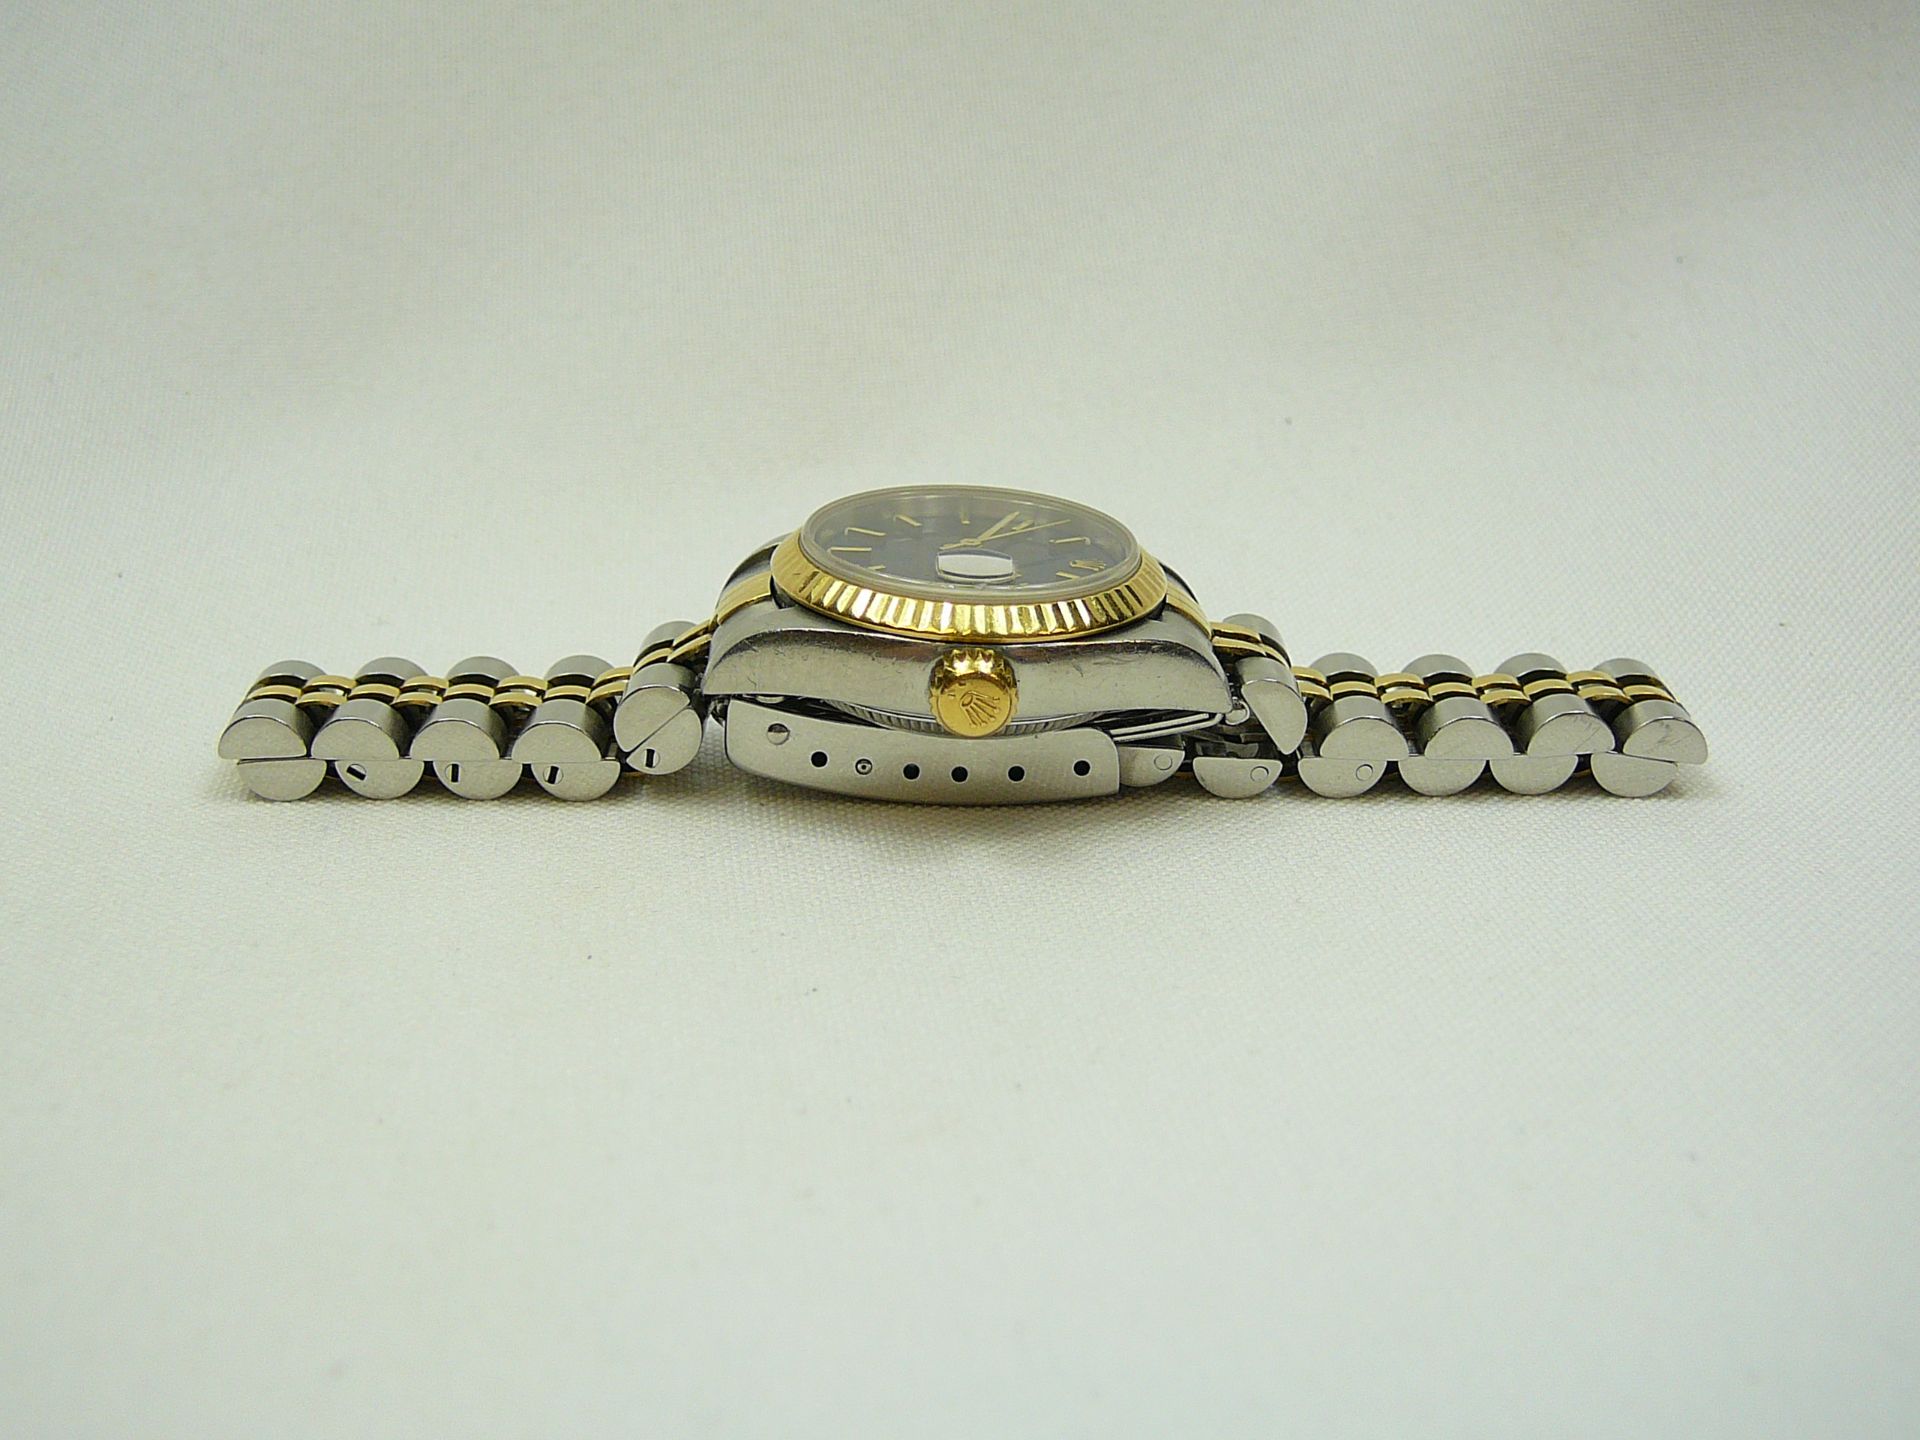 Ladies Rolex Wrist Watch - Image 3 of 6